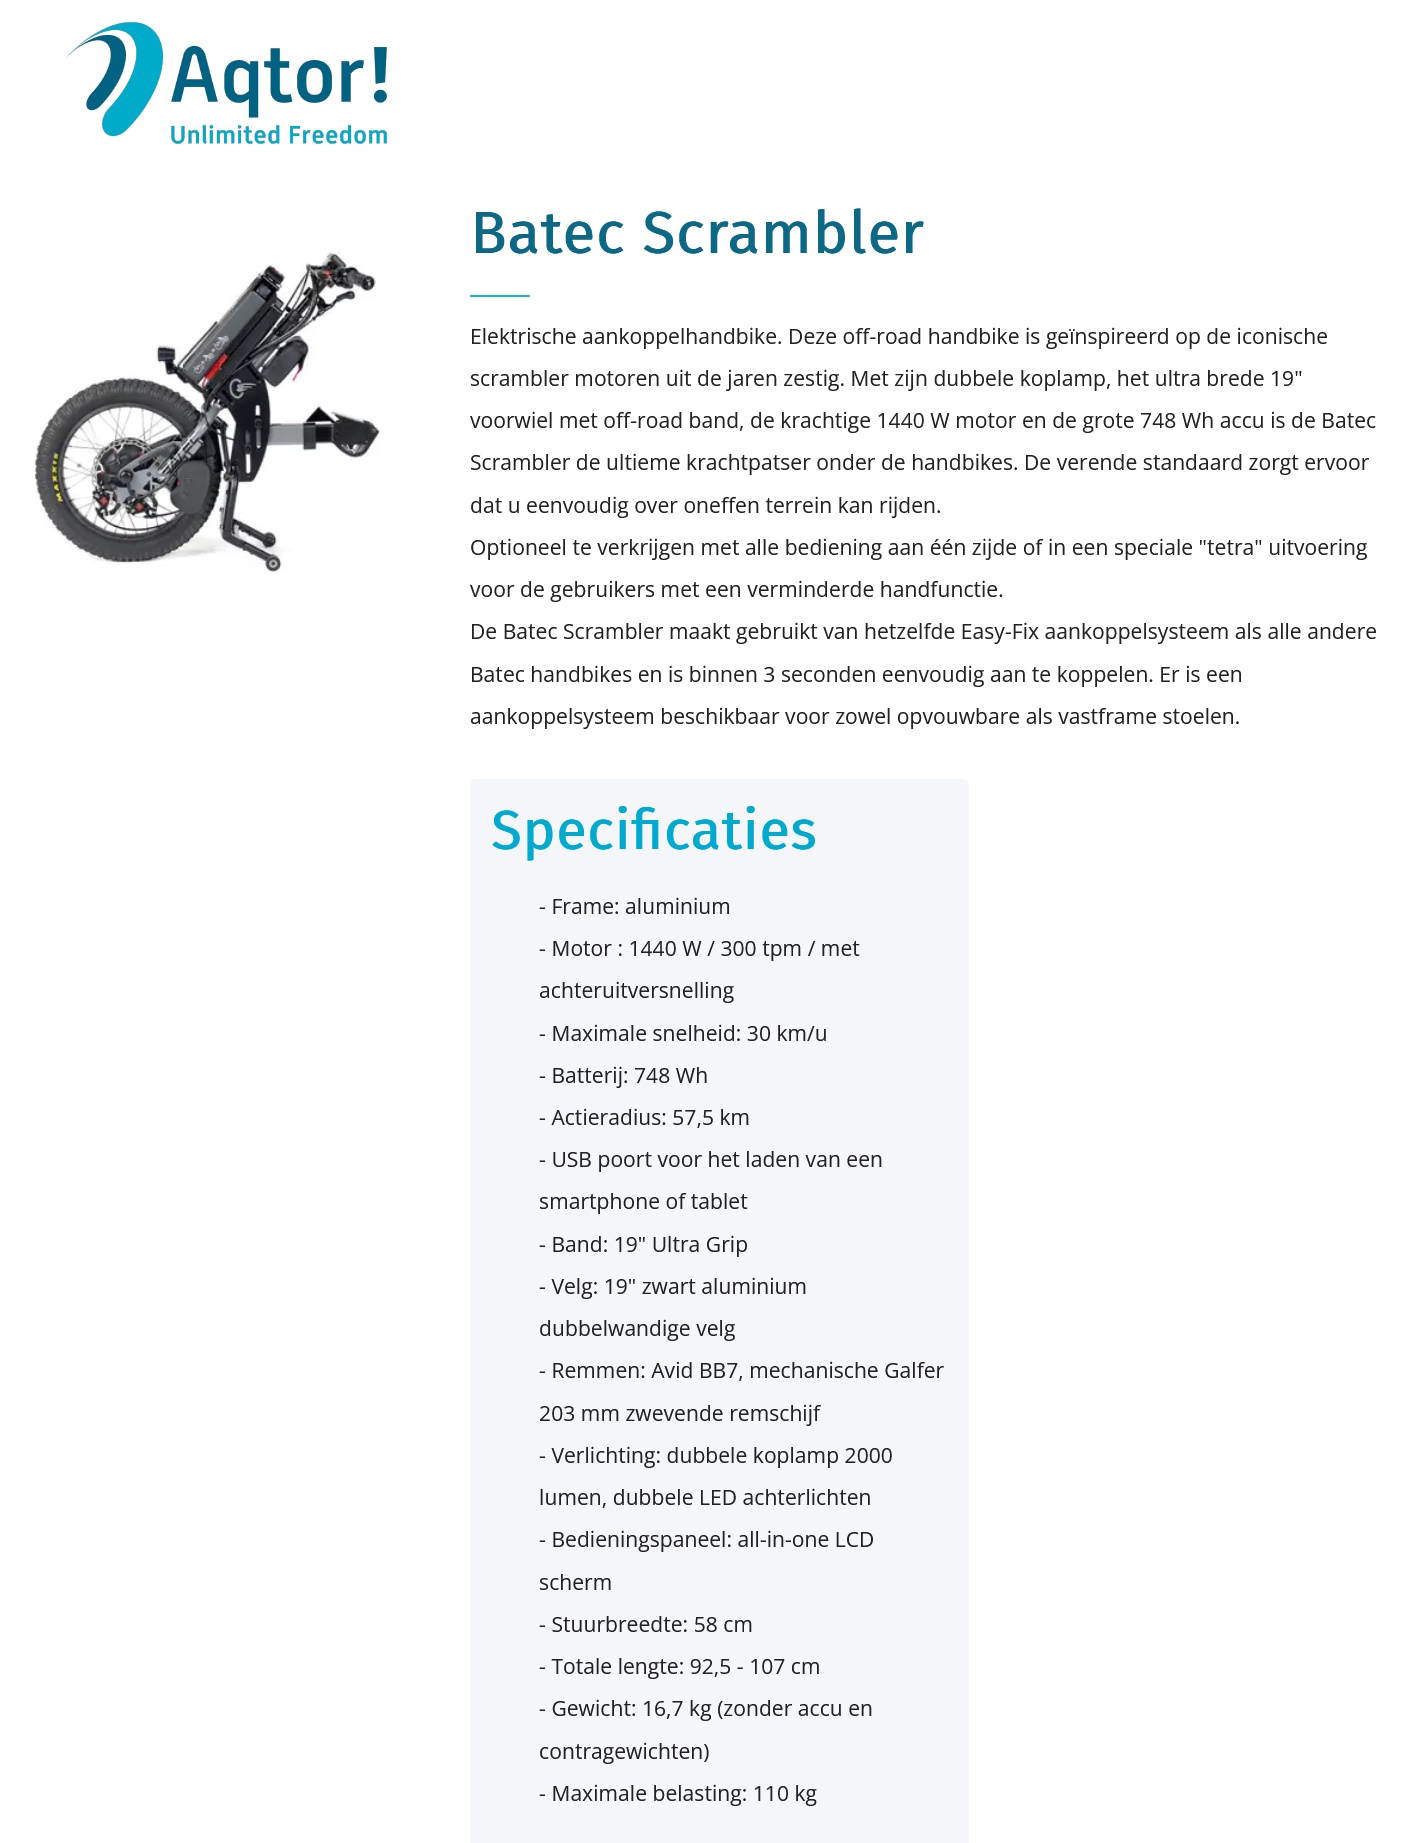 toegevoegd document 2 van Batec Scrambler2 aankoppeleenheid  